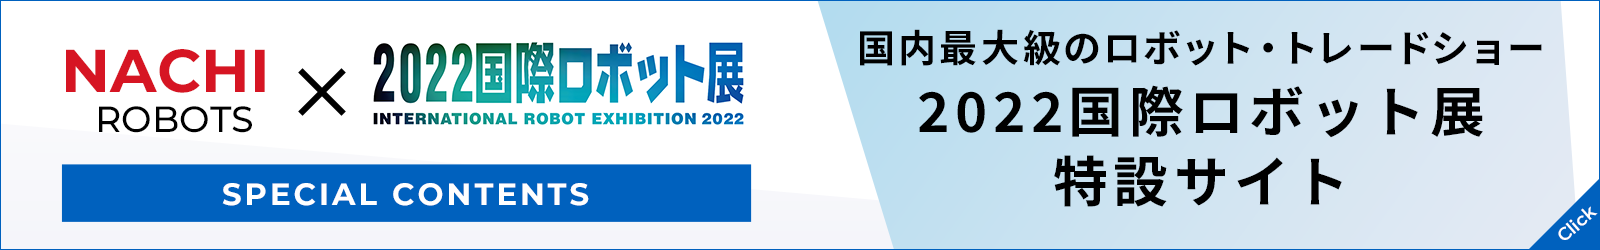 2022国際ロボット展 iRex2022 特設サイト